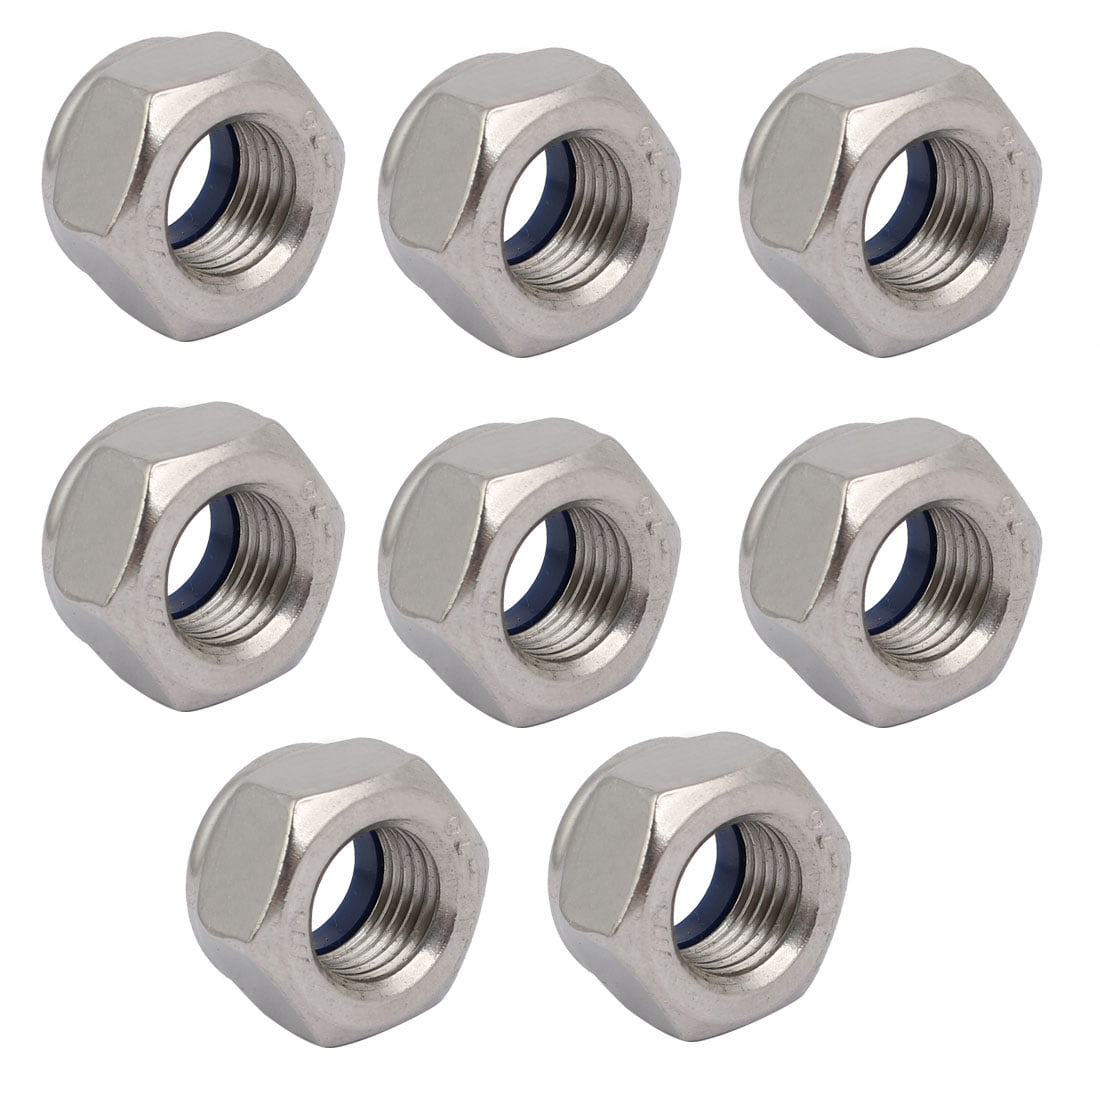 8Pcs M12-1.50 Metric Hex Nut Fine Thread Zinc Plated Steel 